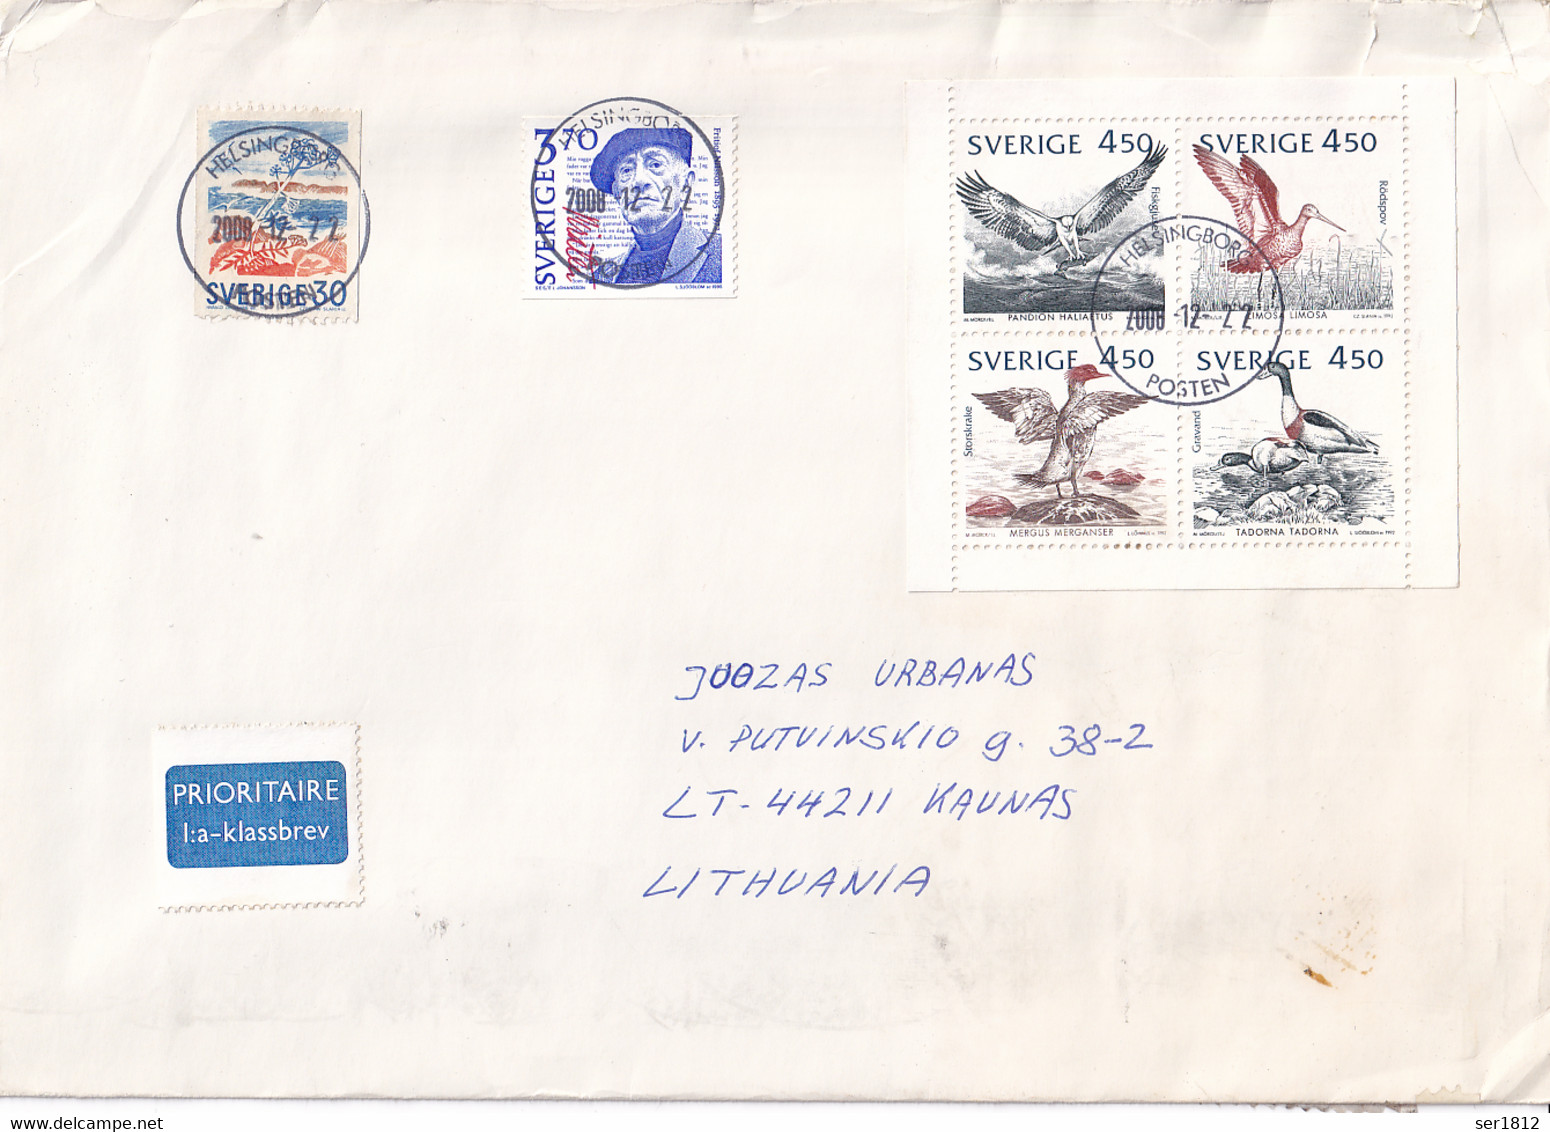 SWEDEN SVERIGE 2008 Postal Cover To Kaunas Lithuania Birds Bird - Covers & Documents